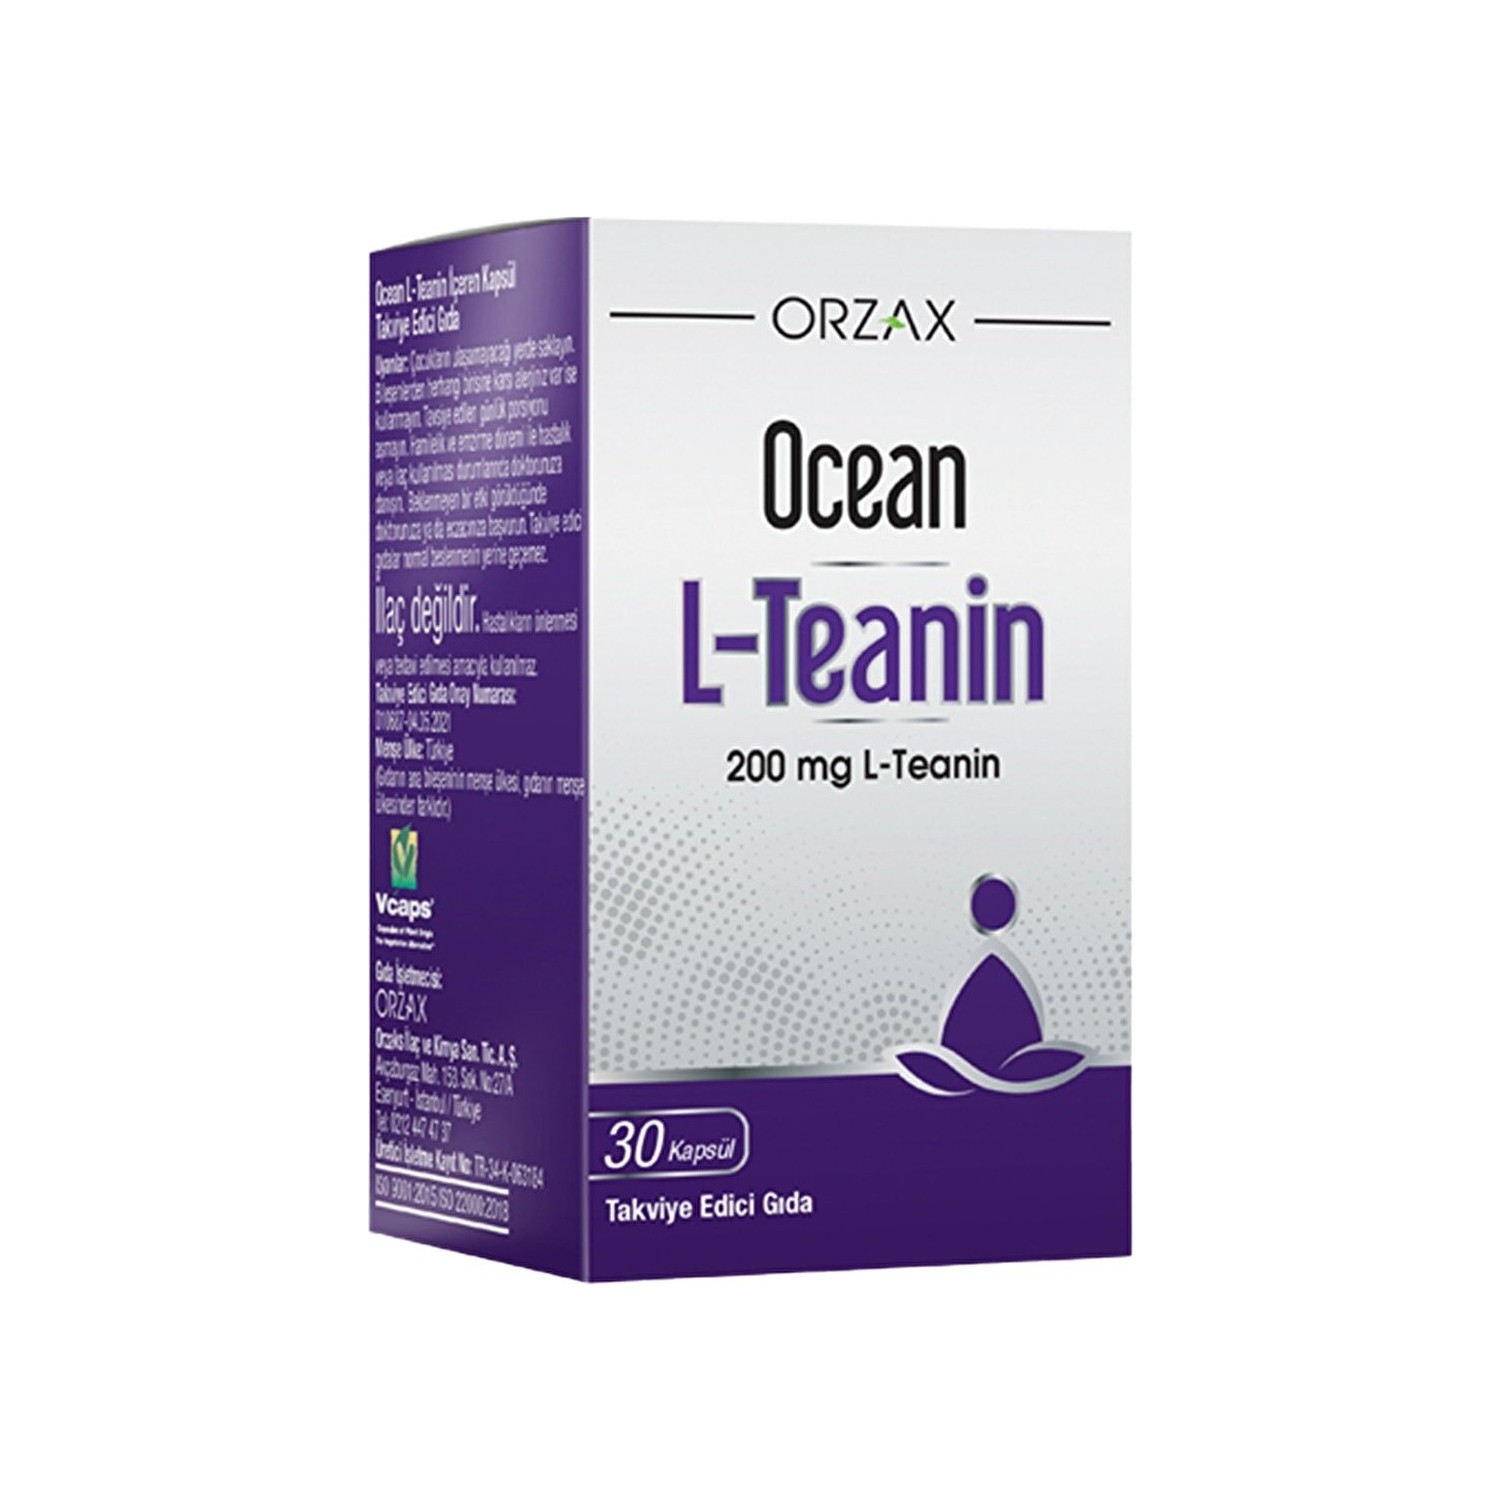 solgar l теанин в свободной форме 150 мг 60 растительных капсул Пищевая добавка Ocean L-Theanine 200 мг, 30 капсул